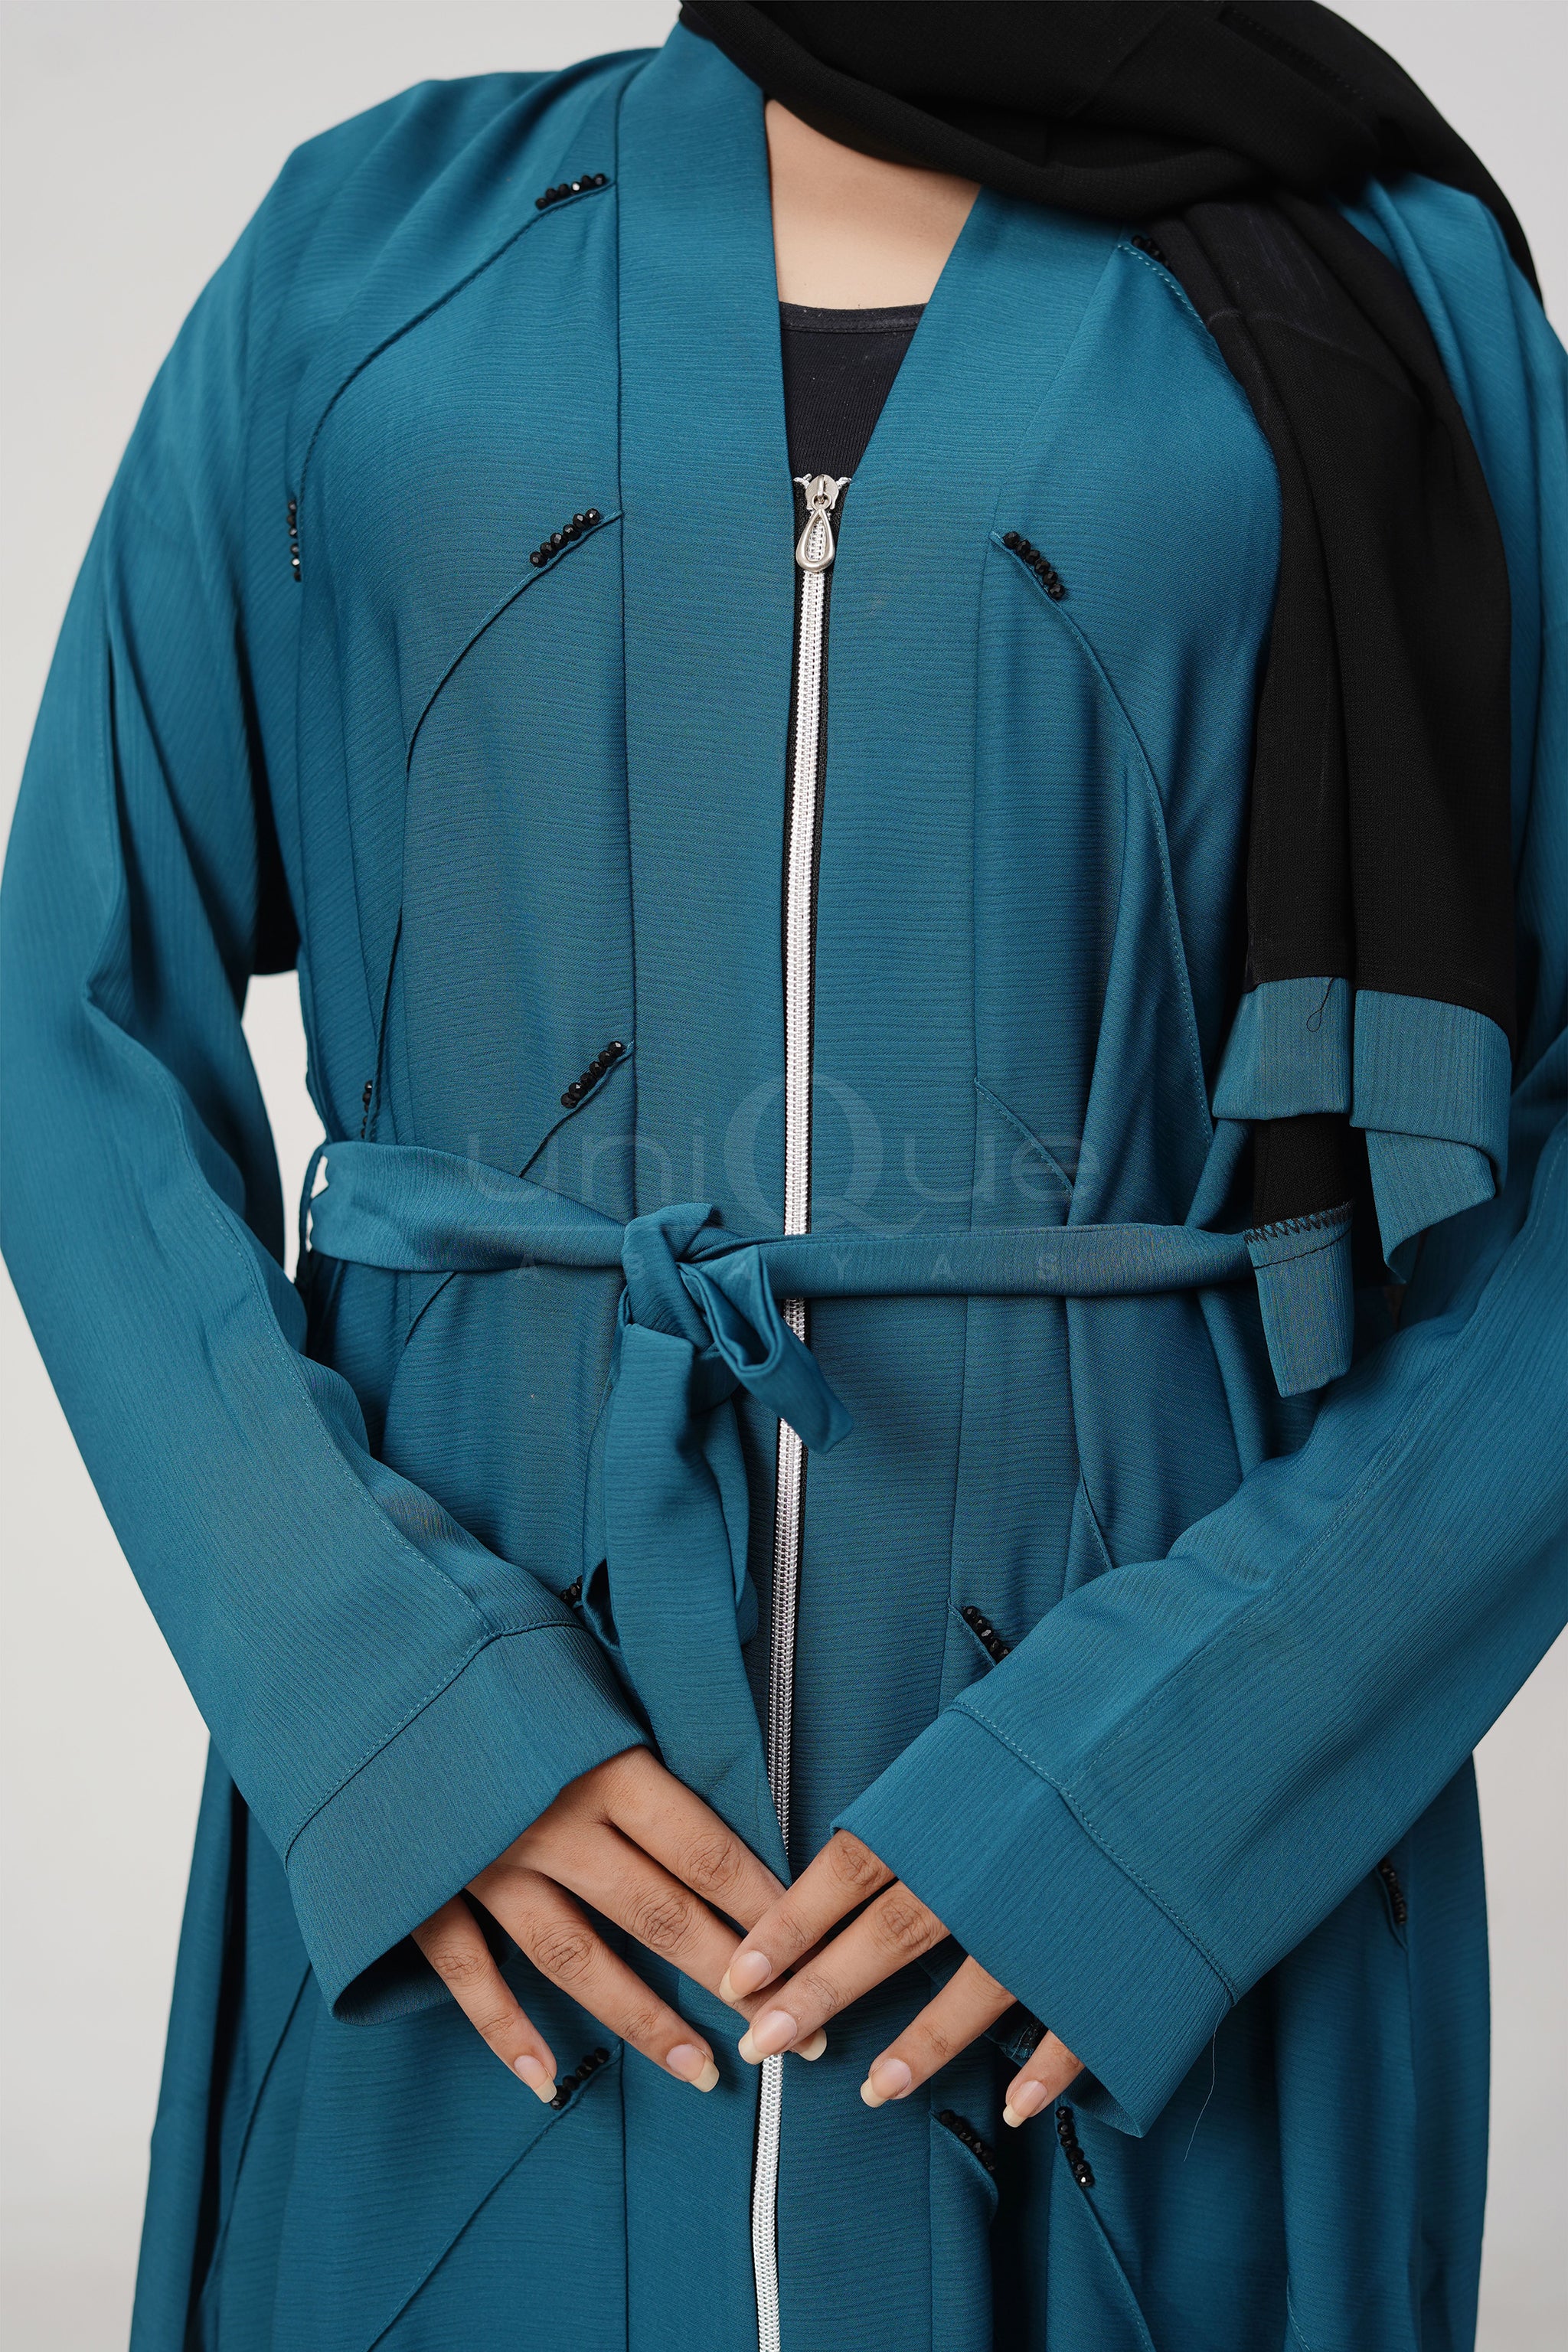 Full Zip Embellished Turquoise Abaya by Uniquewallart Abaya for Women, Full Length Detailed